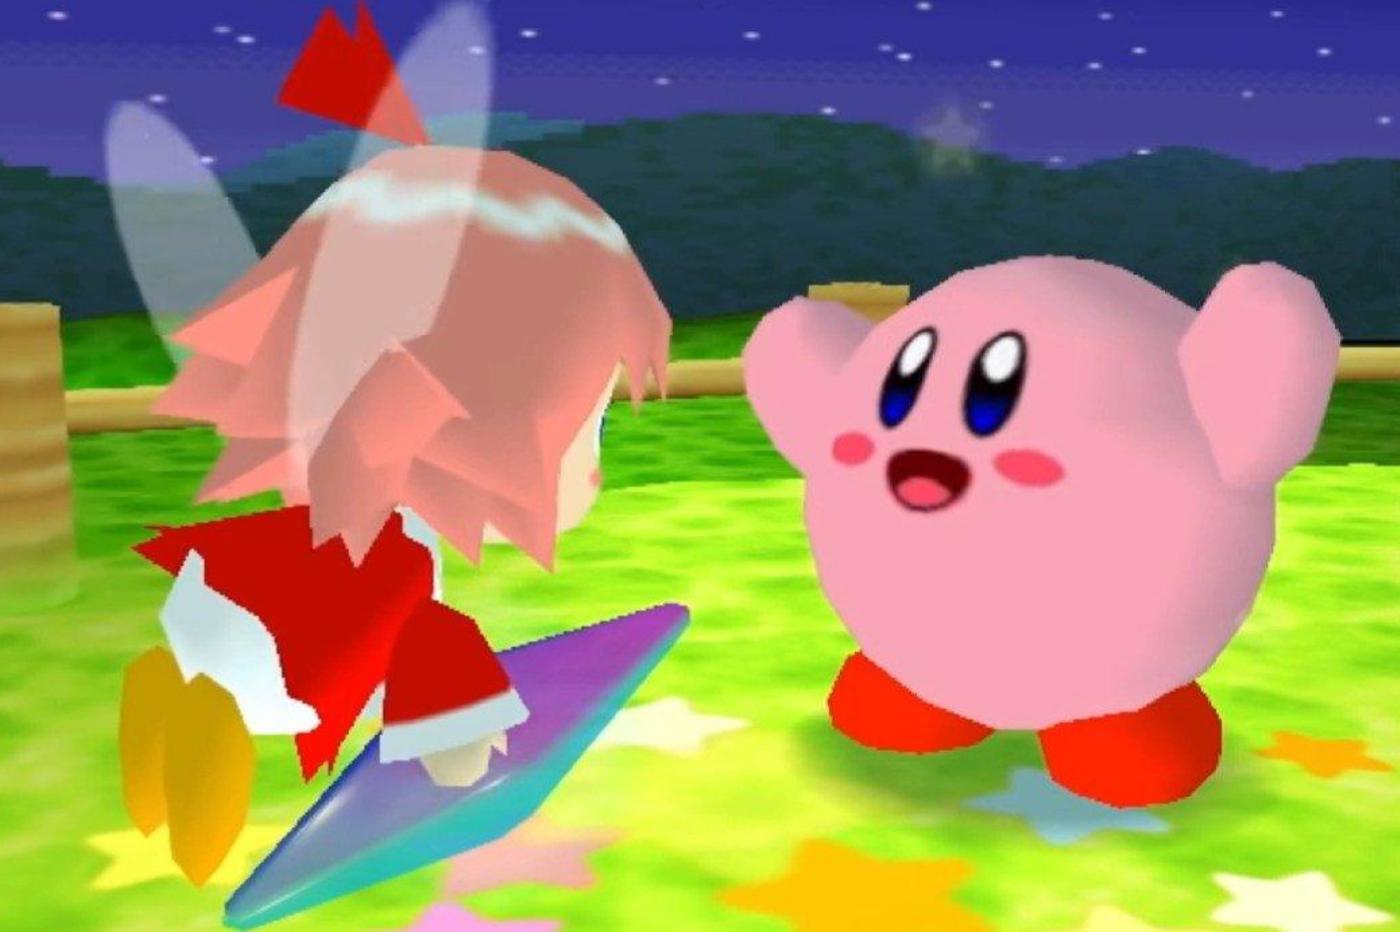 Capture d'écran de Kirby 64 avec Kirby qui sourit et une fée.